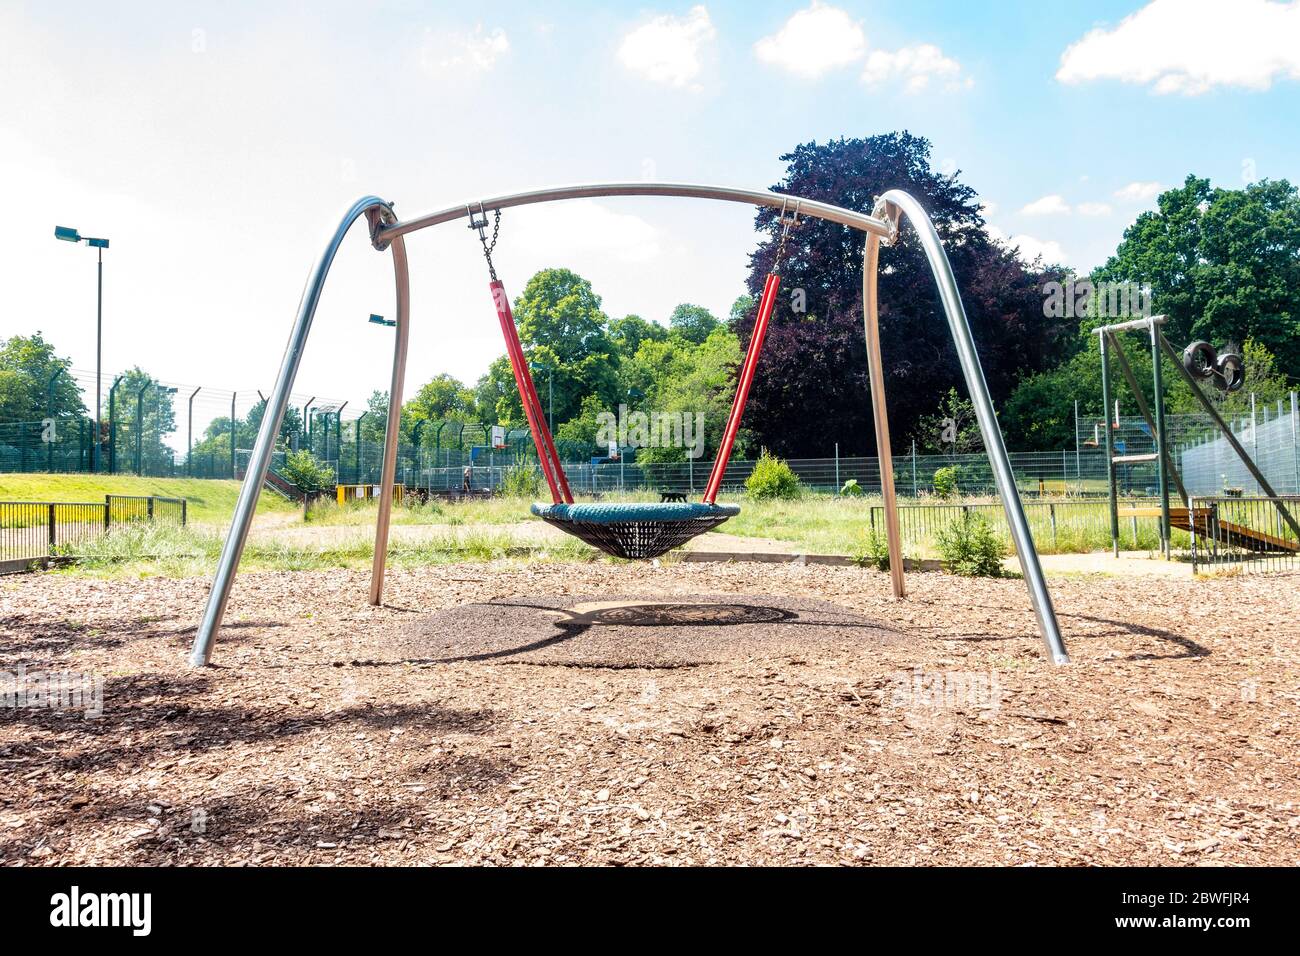 Une balançoire dans un terrain de jeu pour enfants est vide et calme car personne n'est autorisé à l'utiliser en raison de la pandémie du coronavirus. Banque D'Images